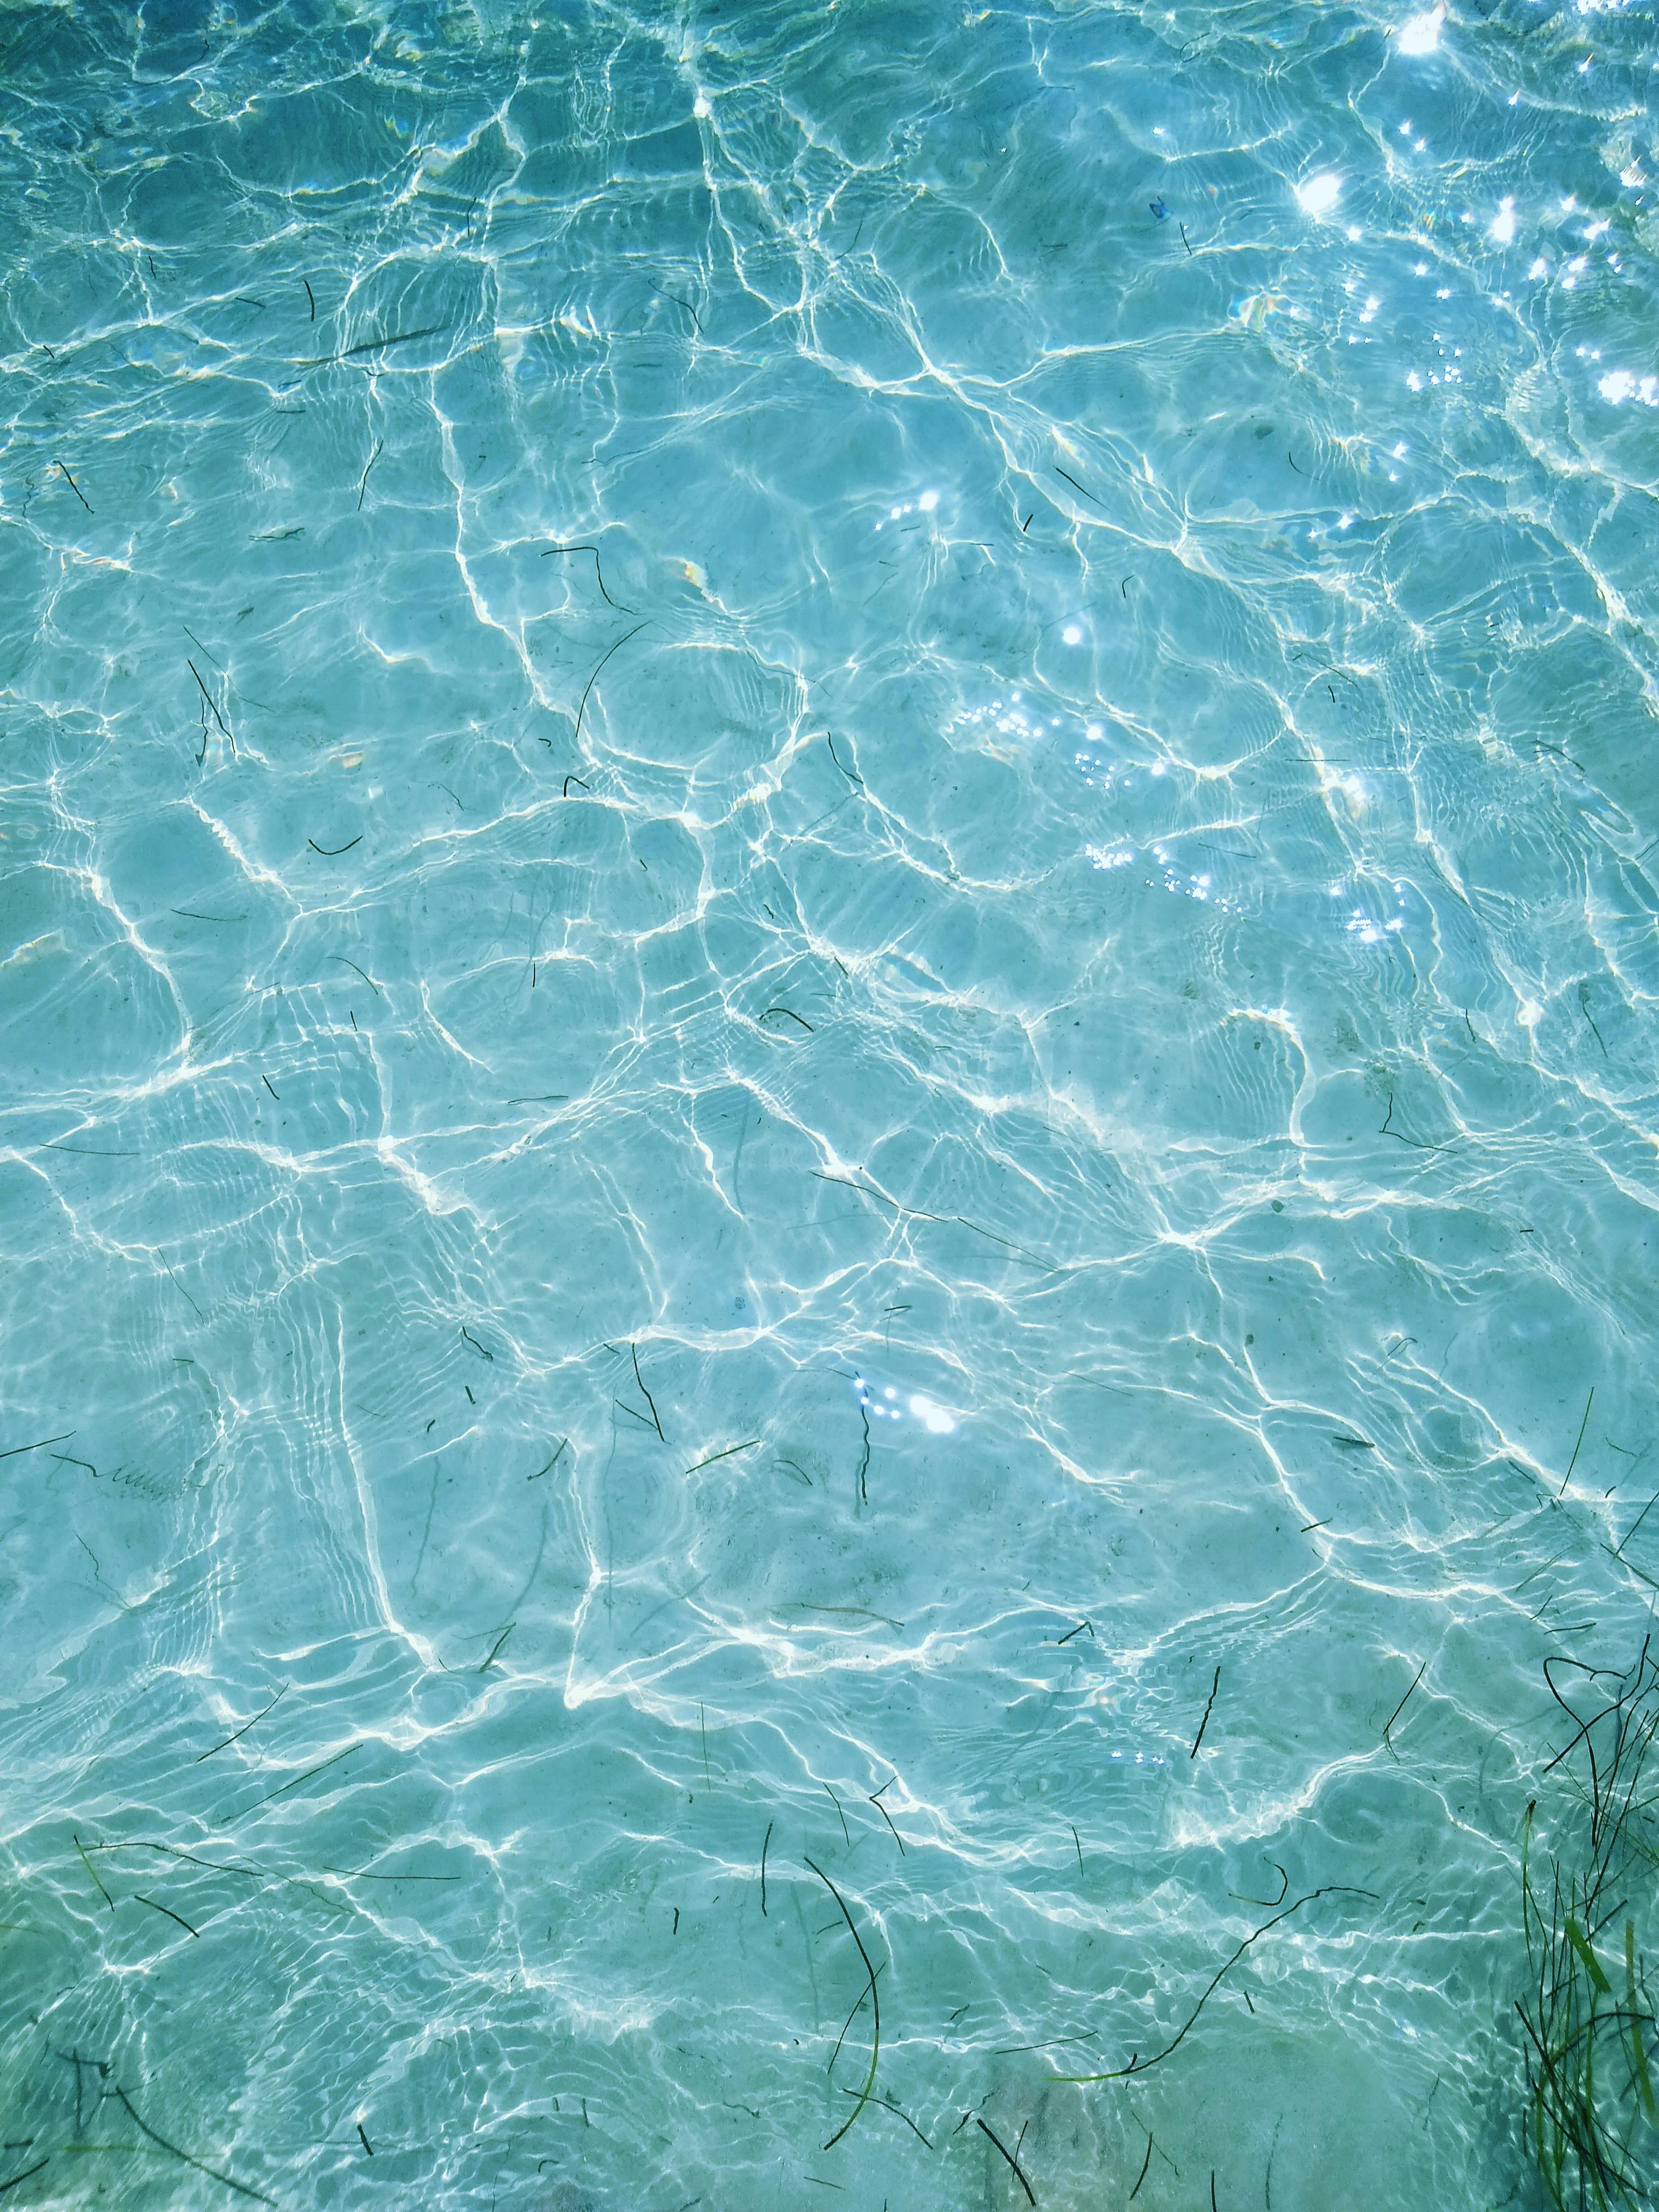 Blue Water Foam · Free Stock Photo